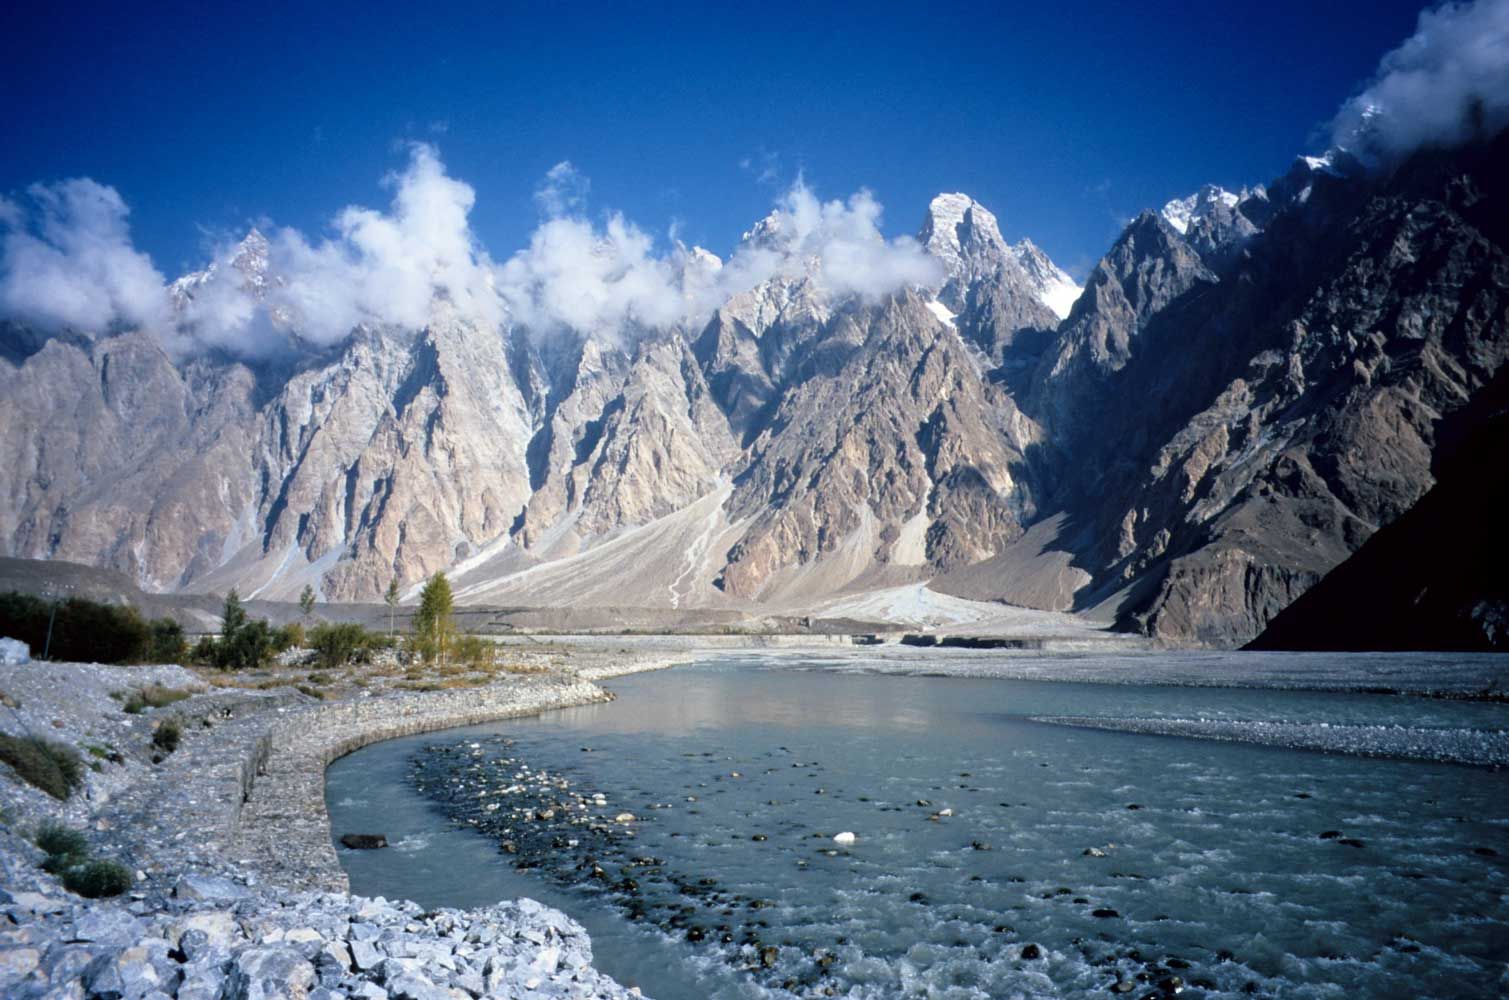 Wallpaper: Karakoram Highway. Karakoram highway, Hunza valley, Travel around the world